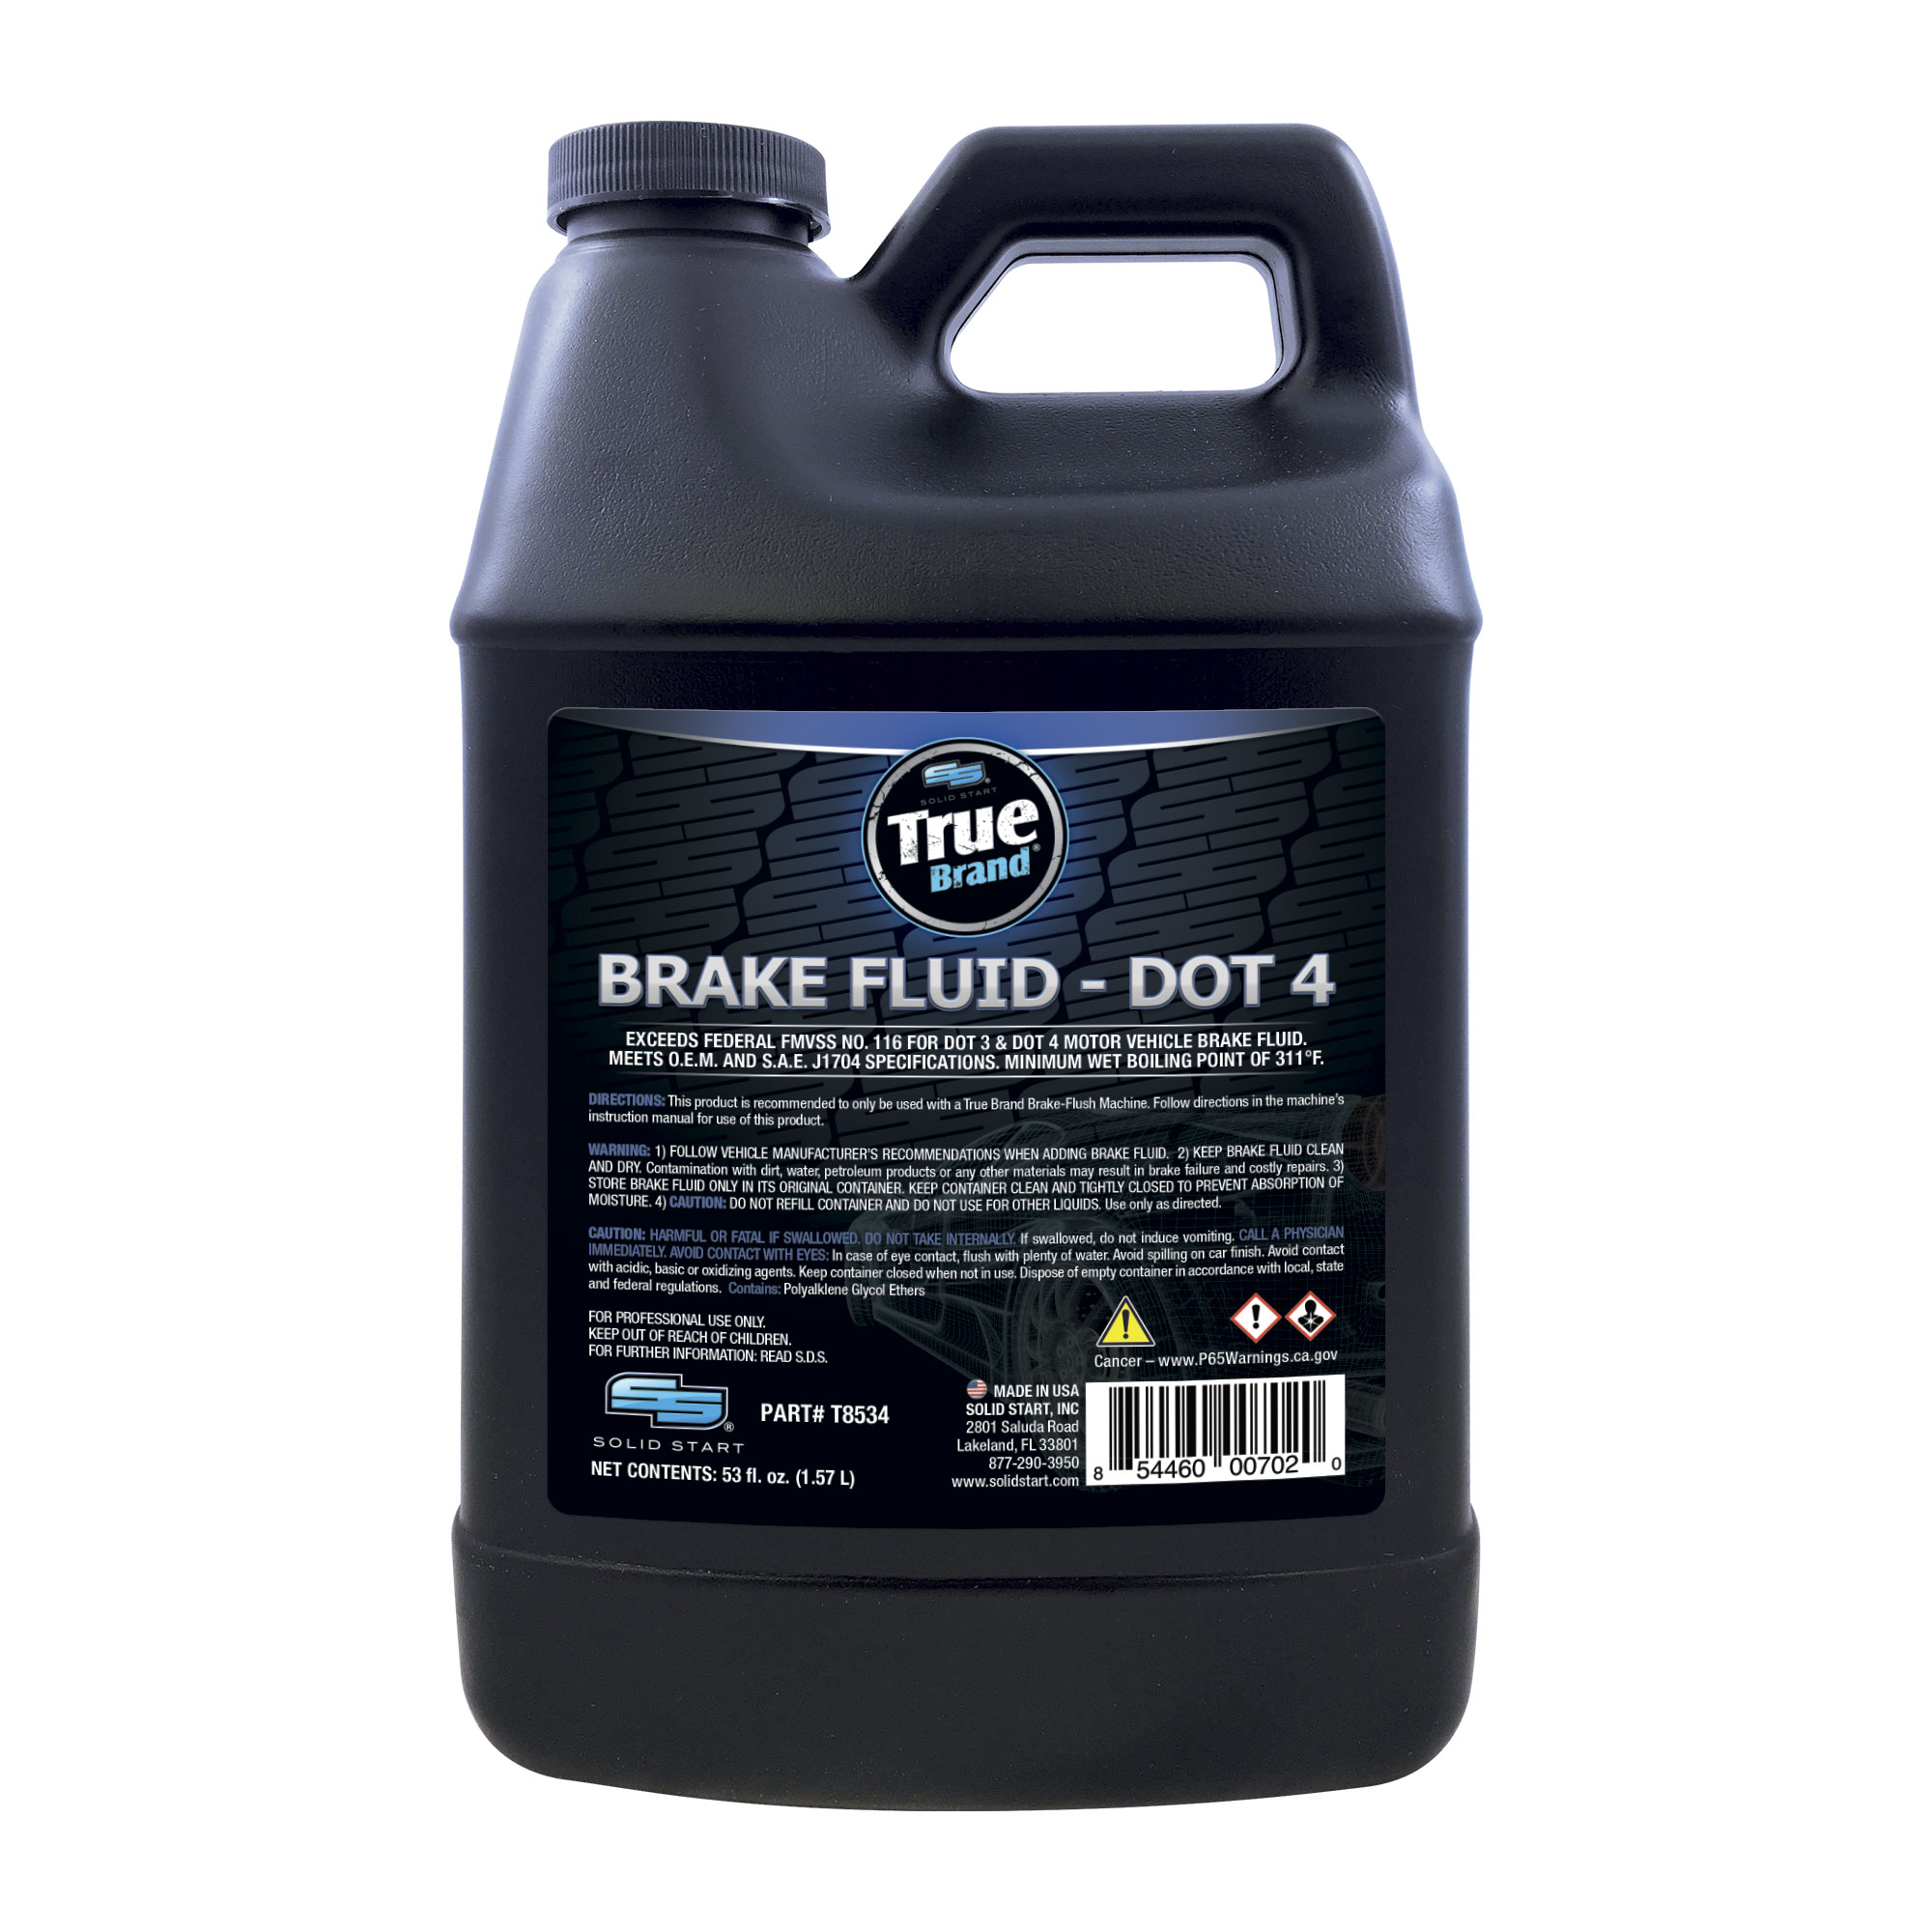 DOT 4 Brake Fluid - Solid Start